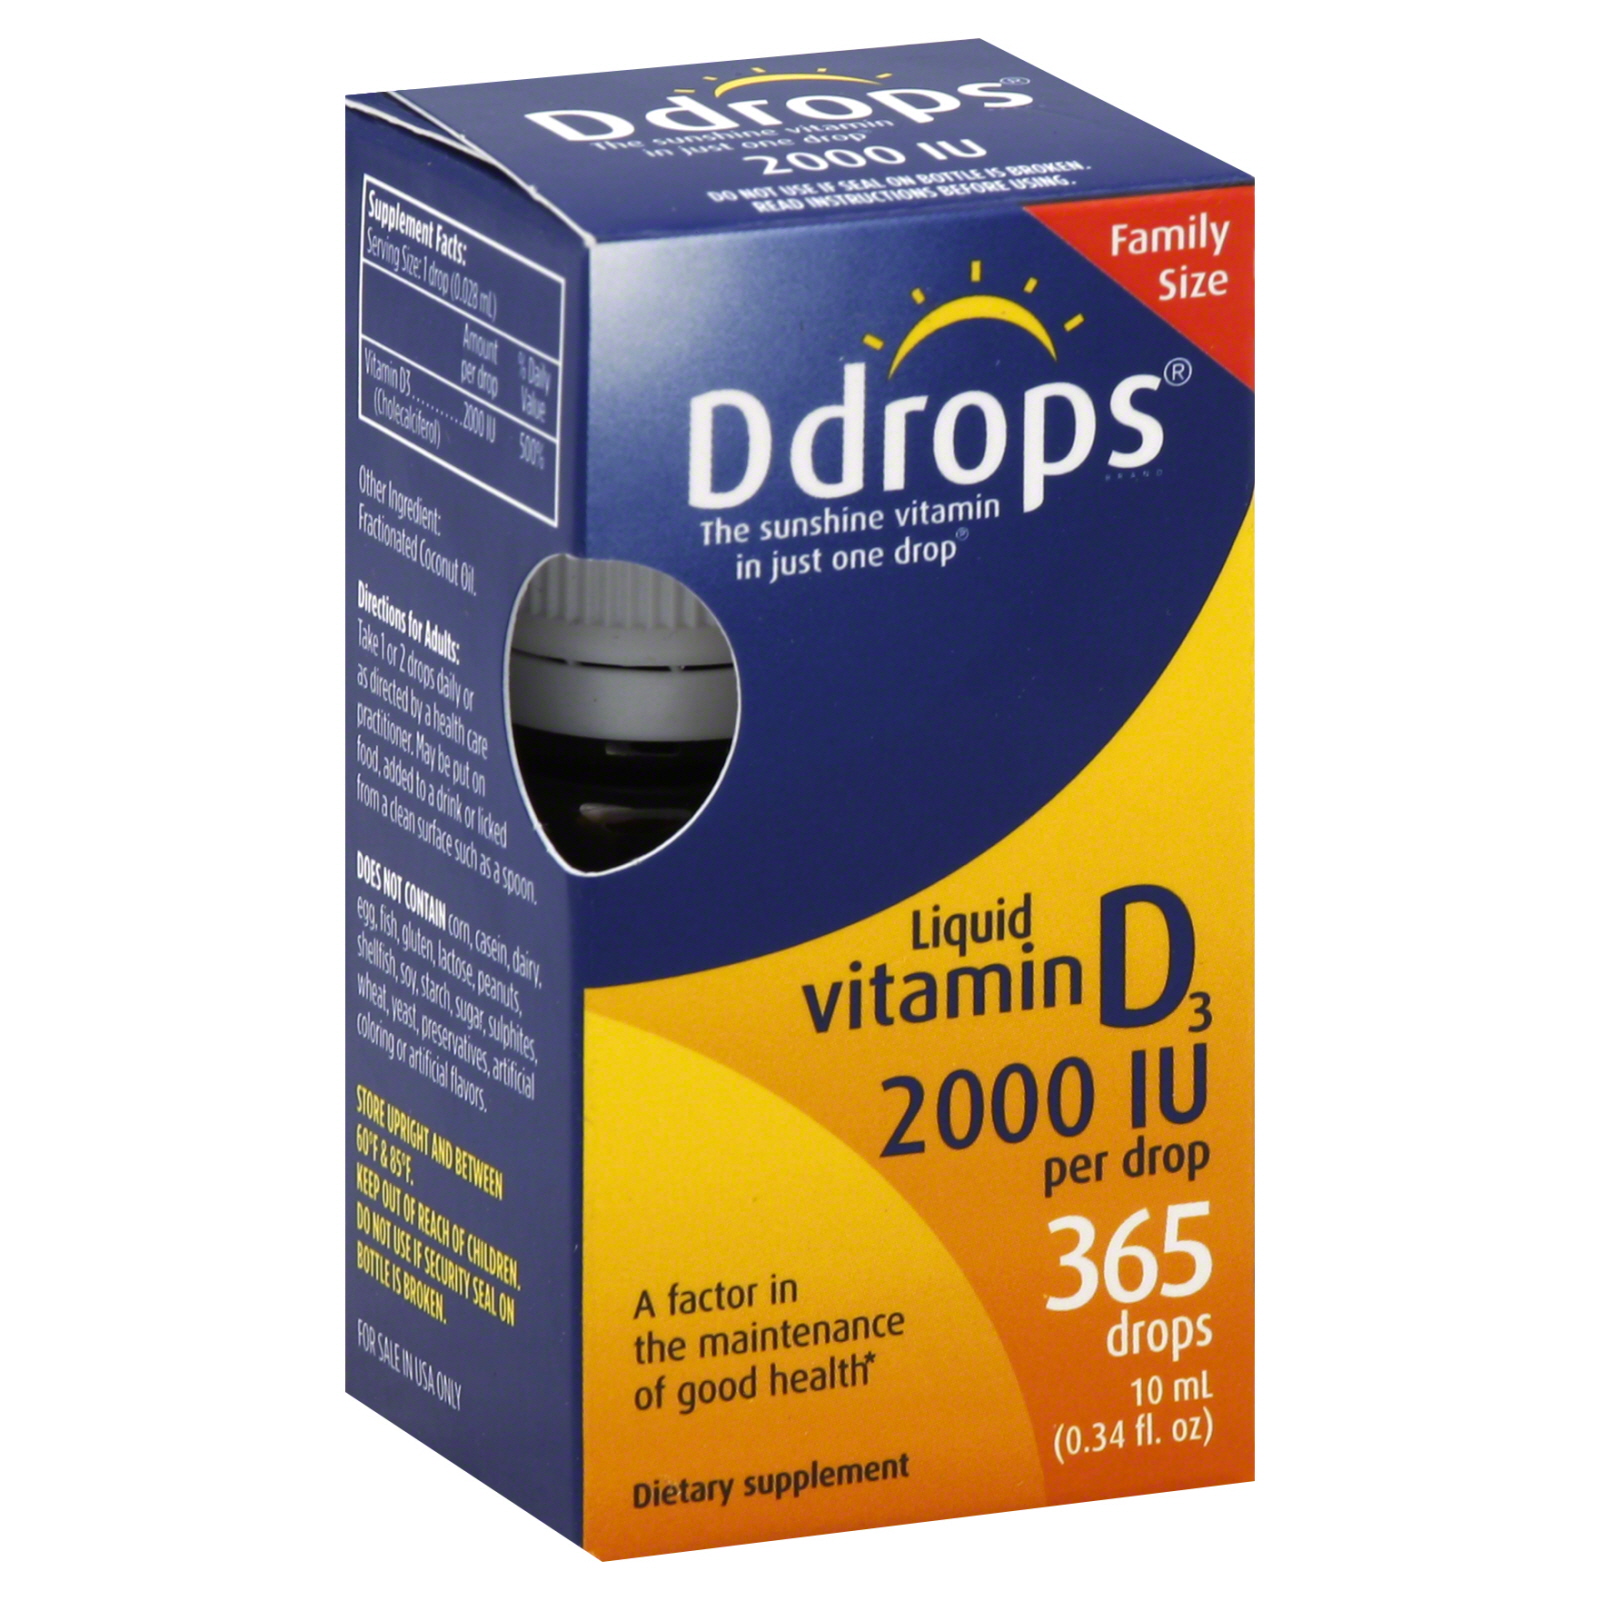 Vitamin D3, 2000 IU, Liquid, Drops, Family Size, 365 drops [0.34 fl oz (10 ml)]